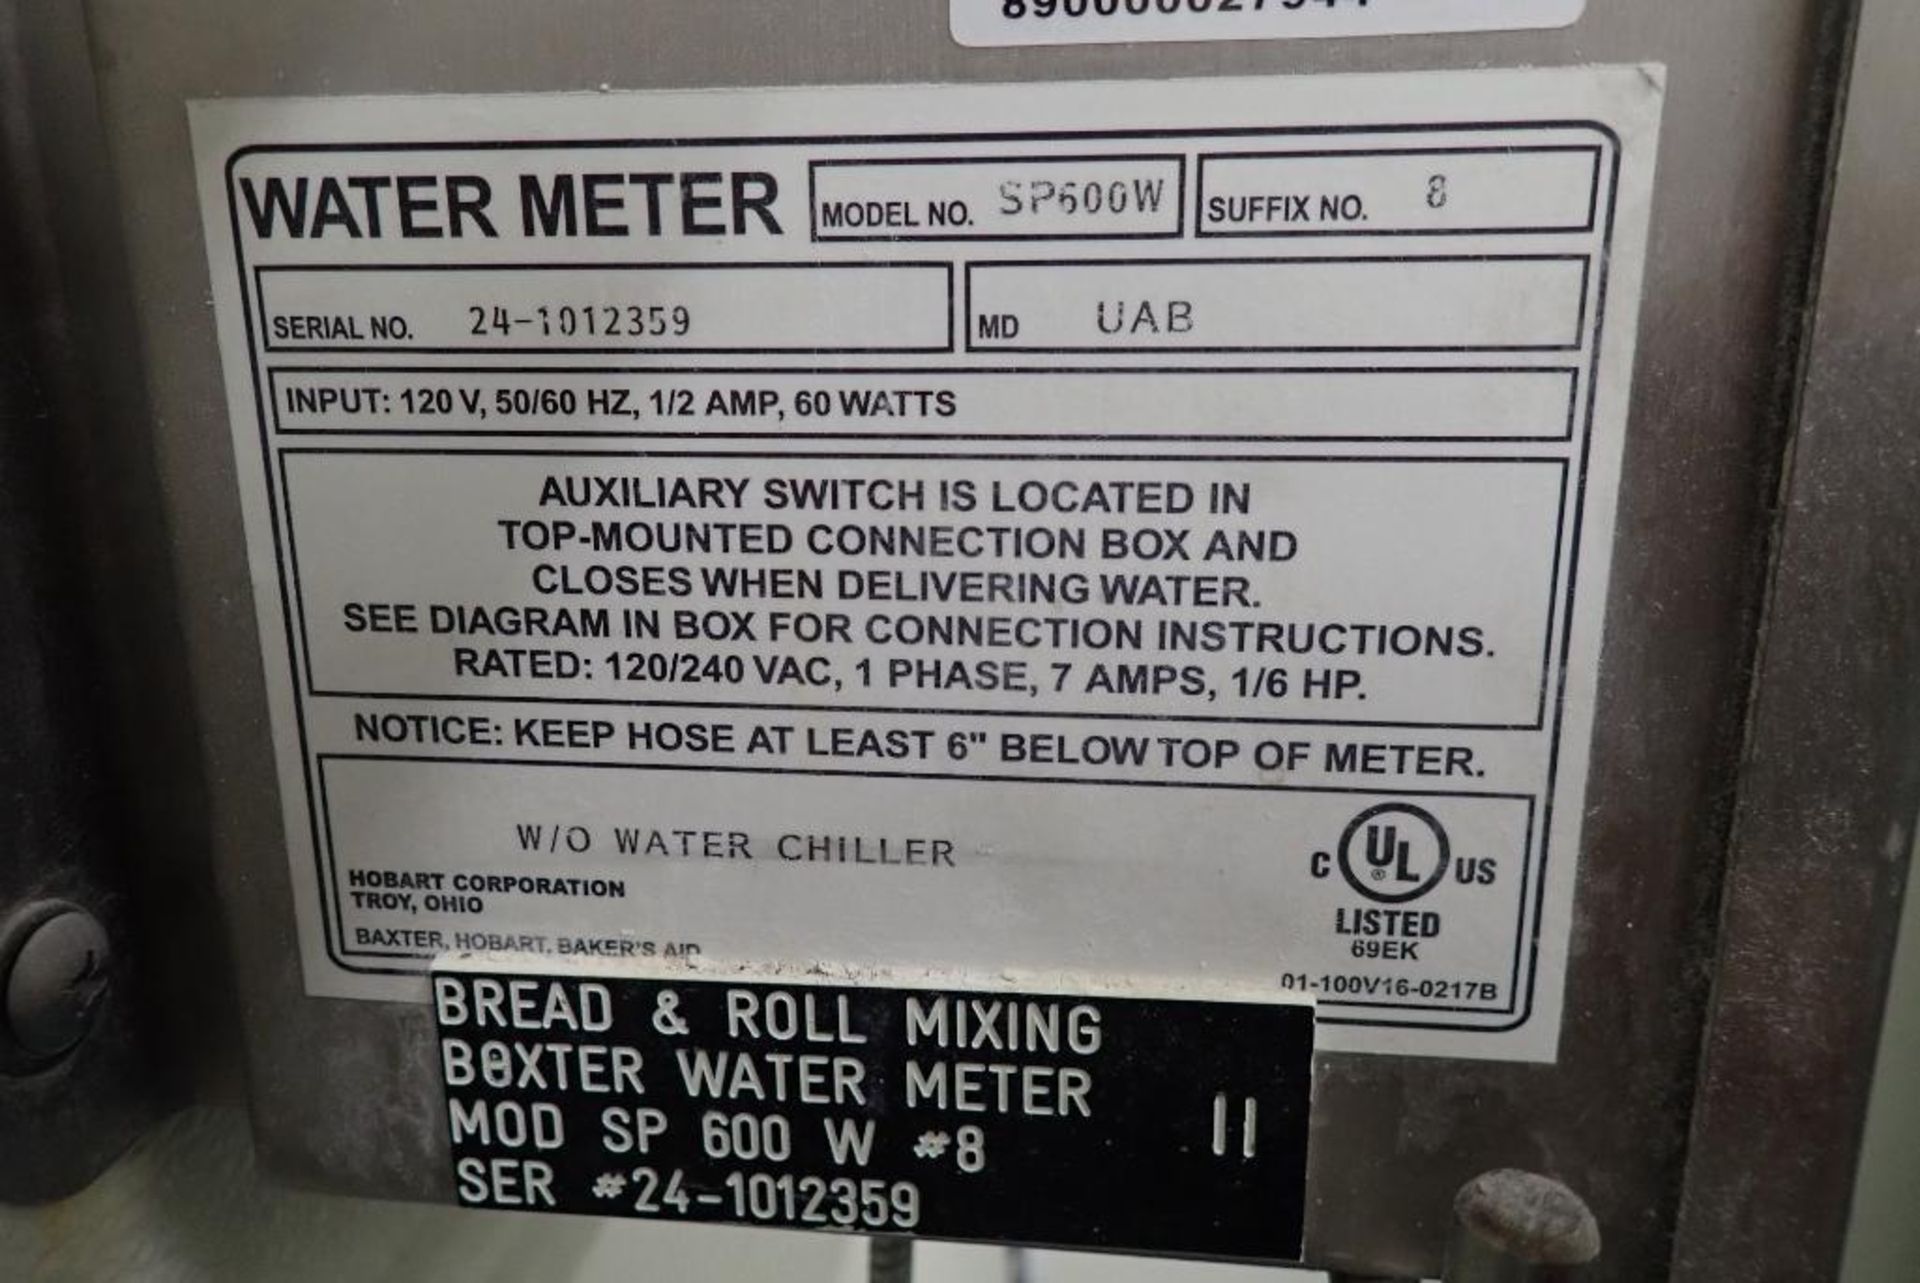 Baxter water meter - Image 5 of 5